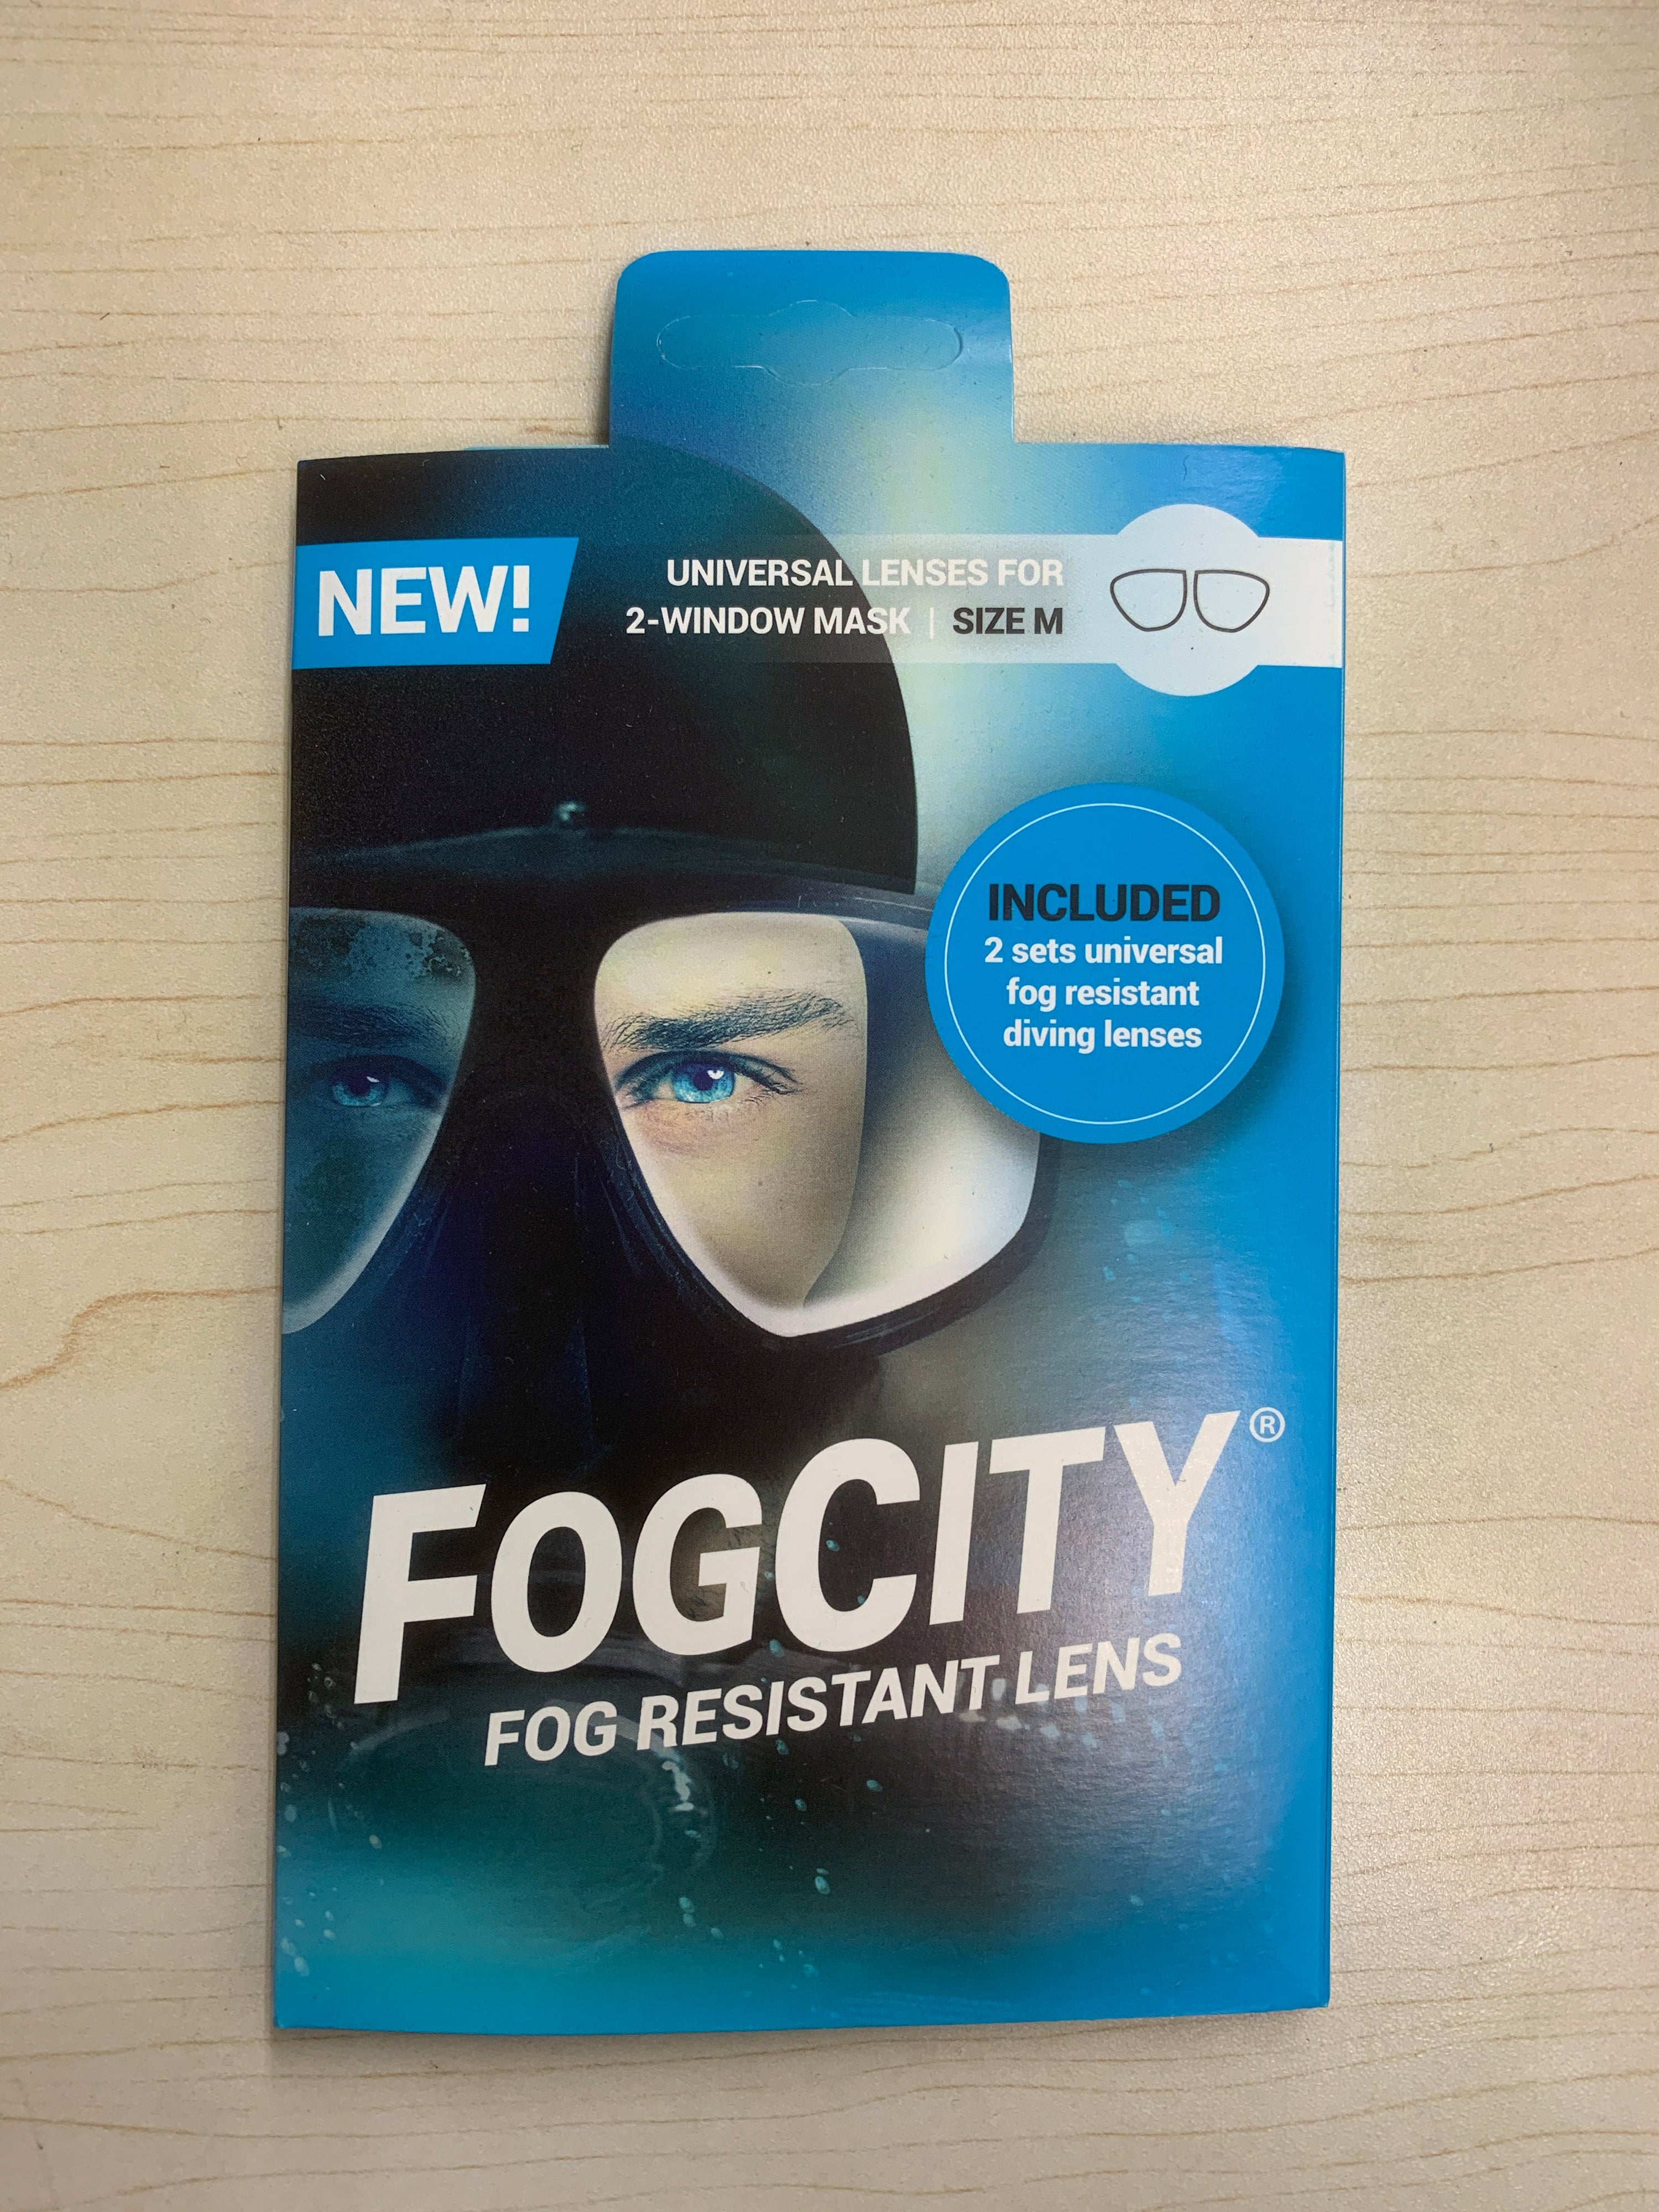 FOGCITY Fog Resistant Lens 2-window mask / M - Oyster Diving